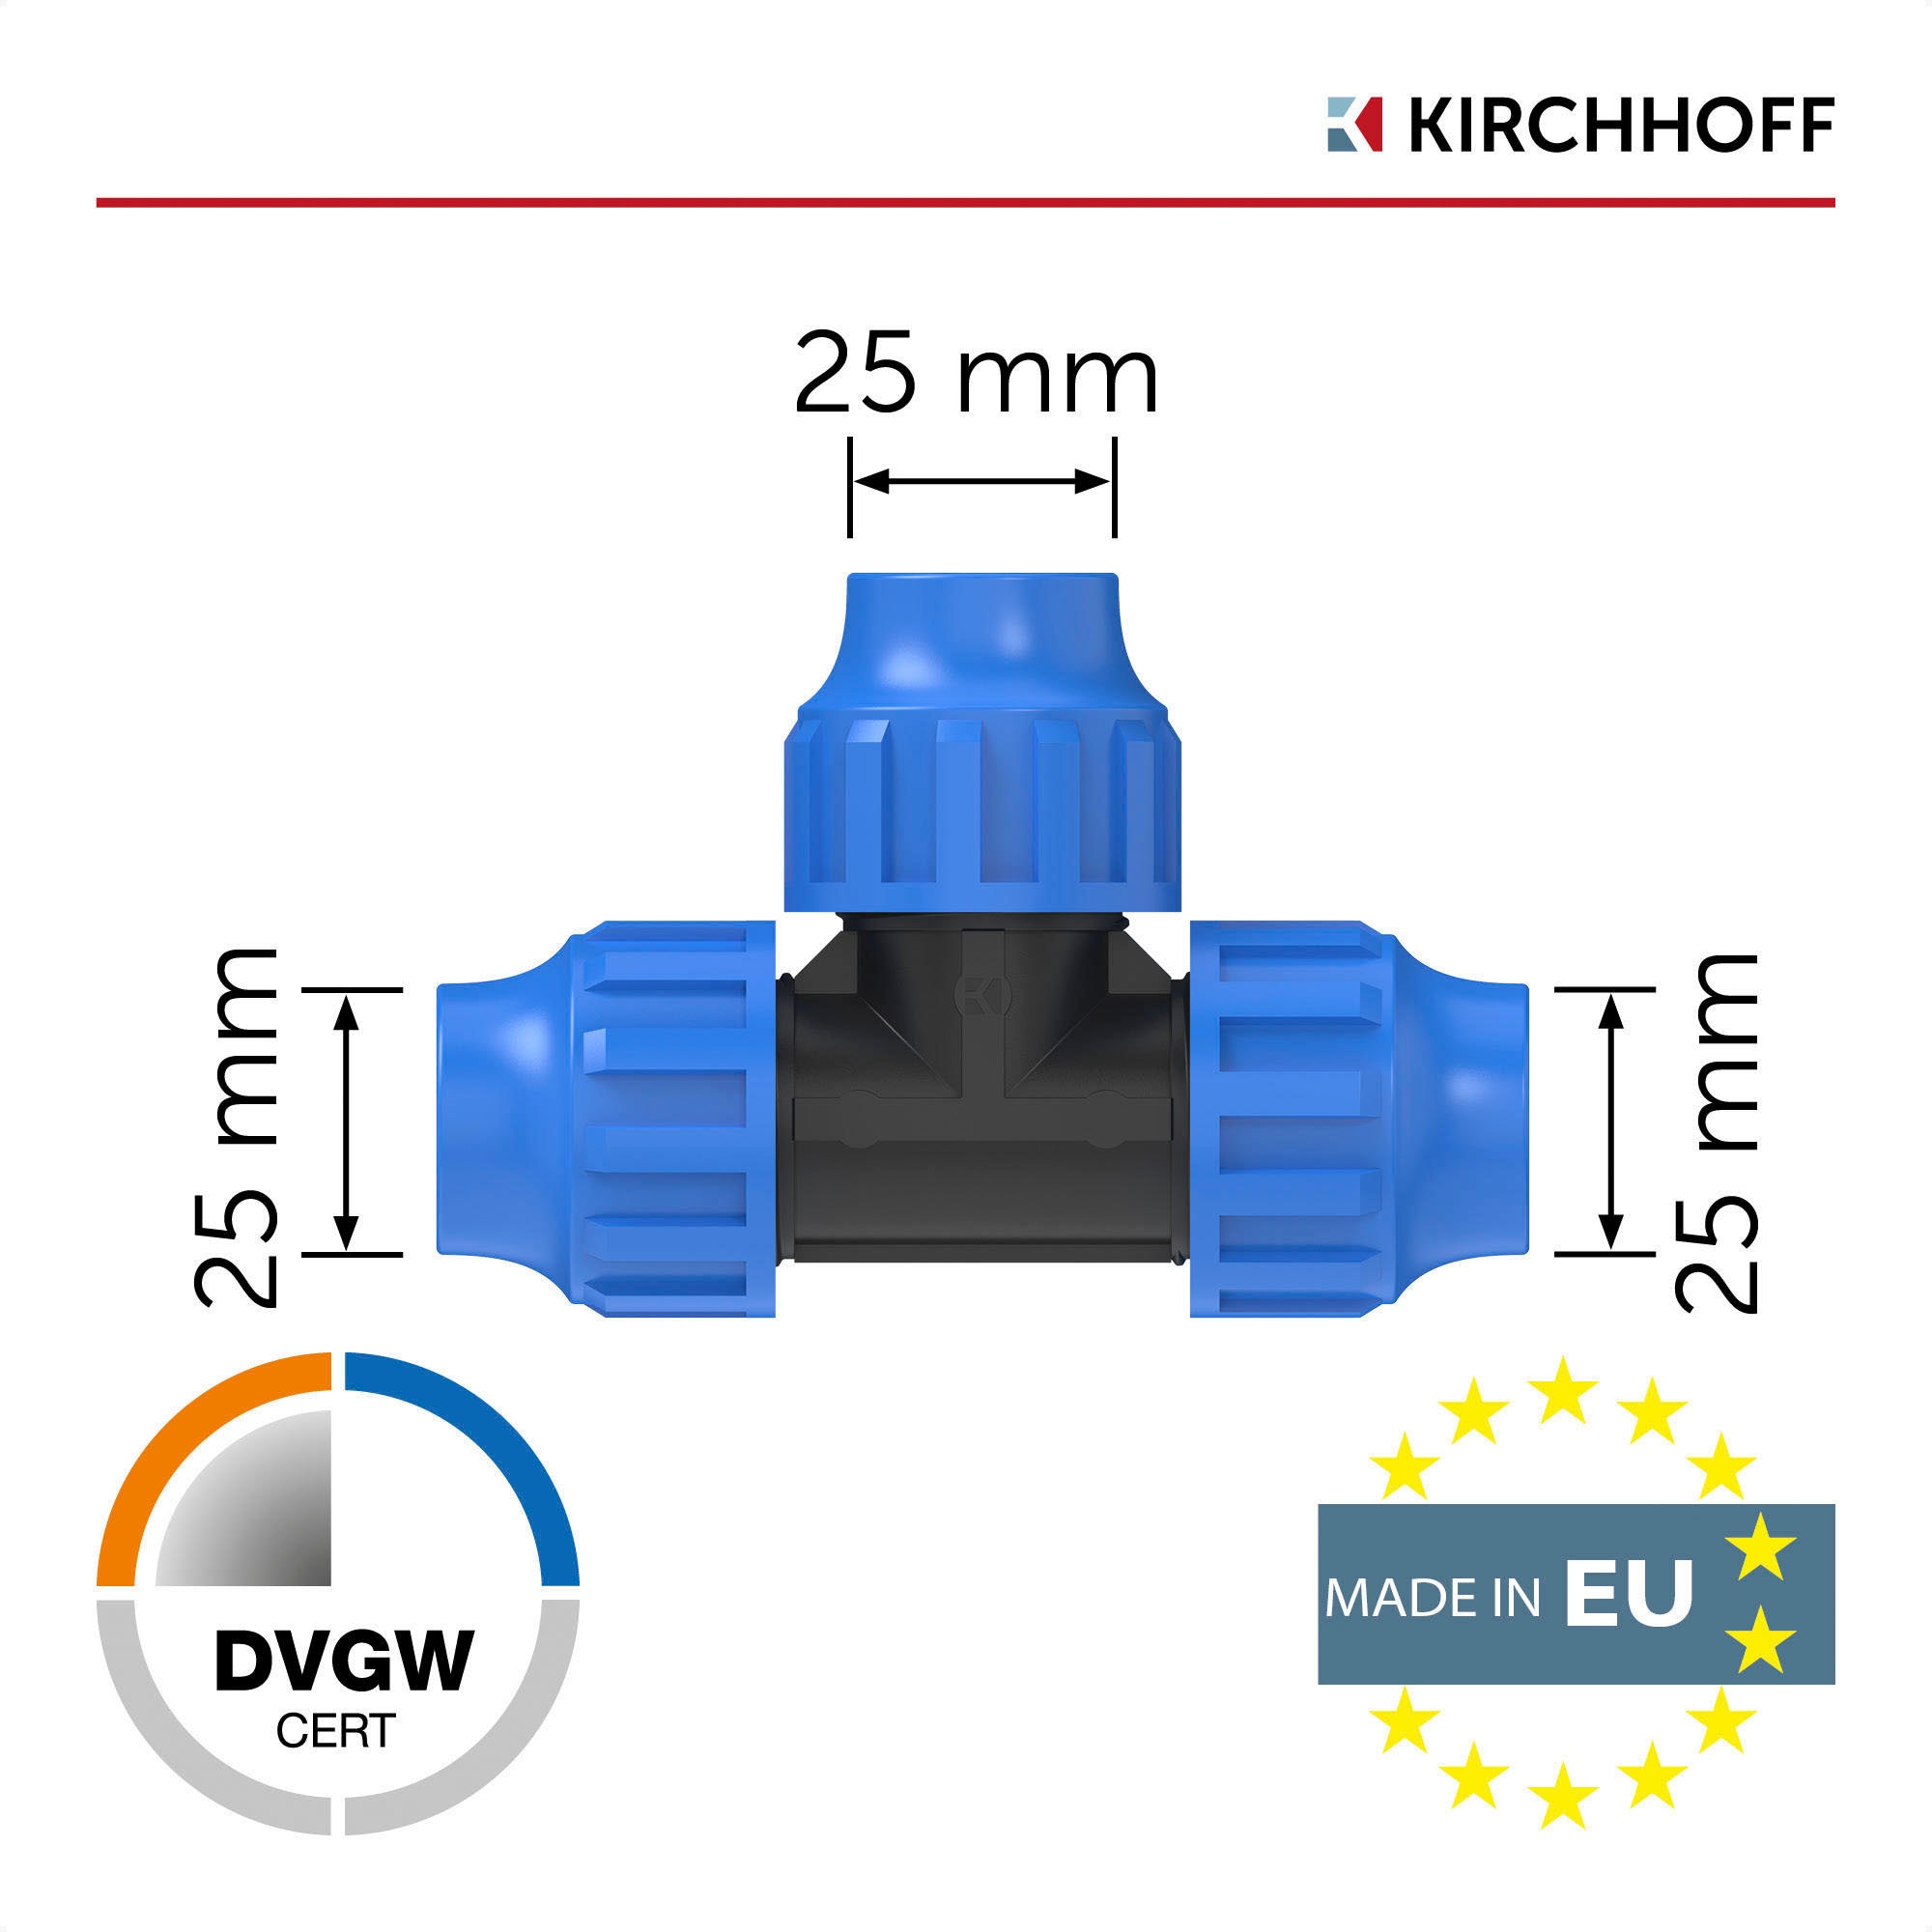 Kirchhoff T-Stück, für HDPE Rohr, 25 mm